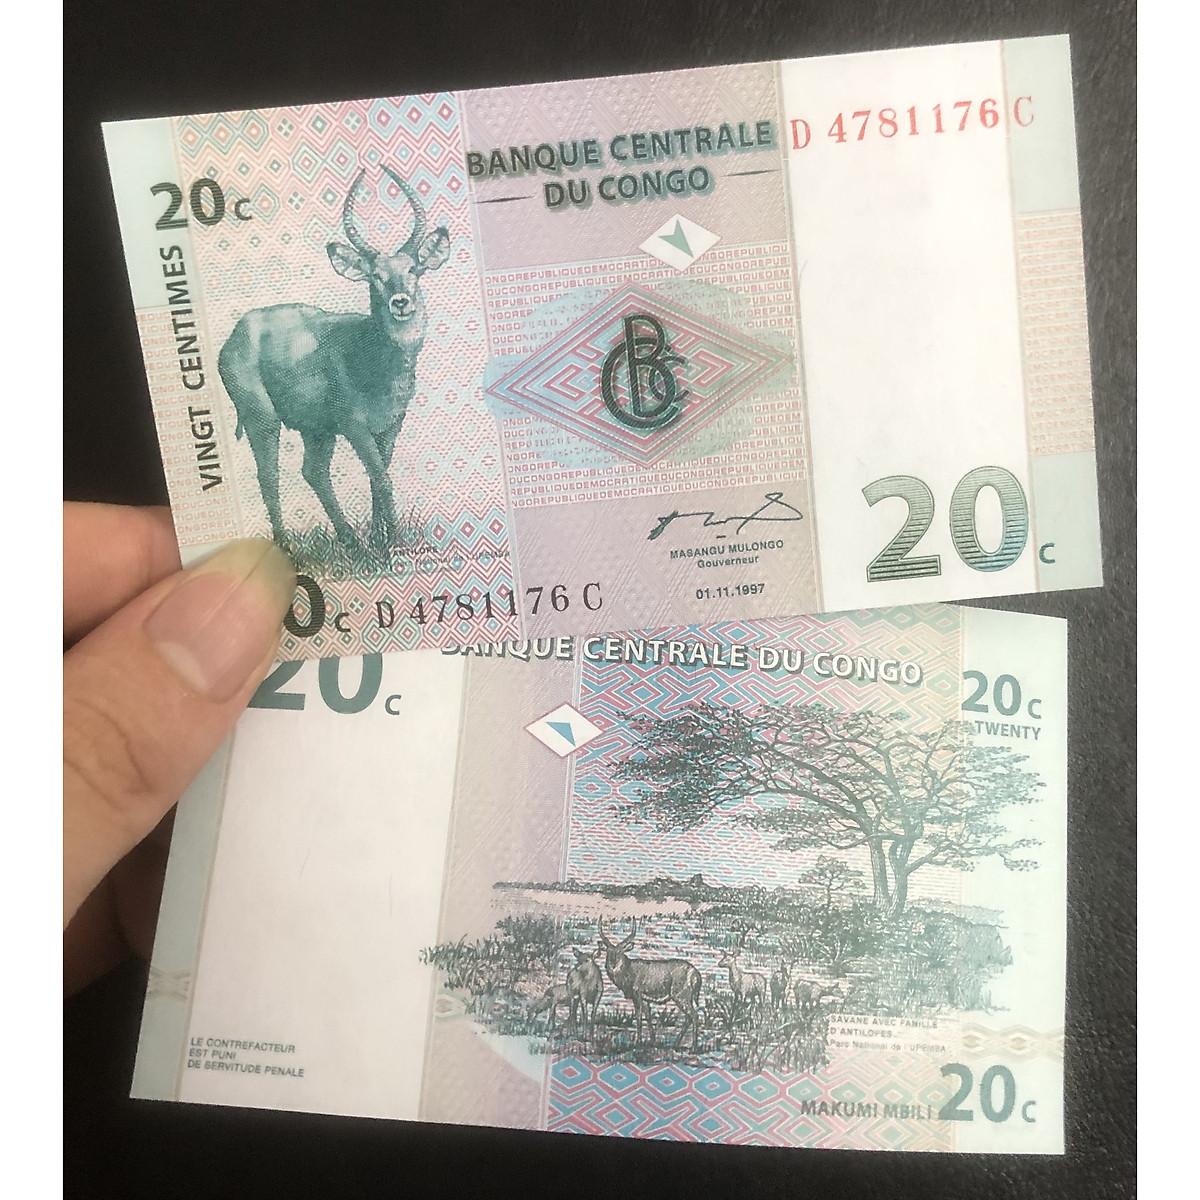 Tờ tiền Congo mệnh giá 20 Francs, tặng kèm bao nilong bảo quản